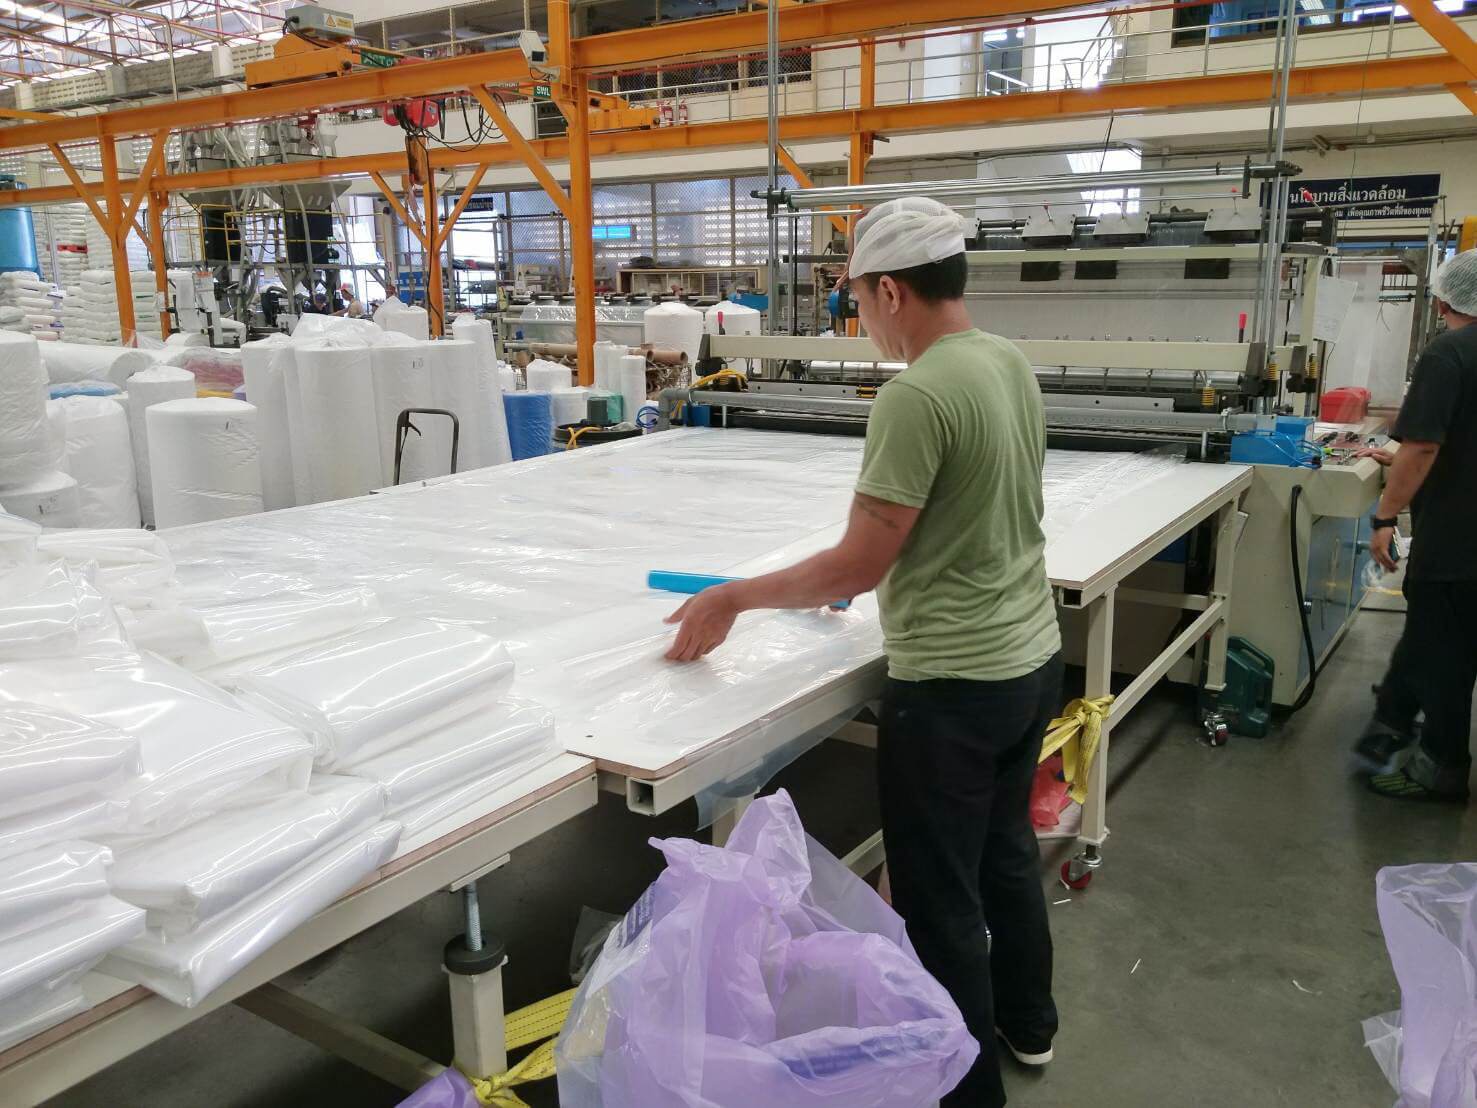 Nuestro cliente de Tailandia ordenó una máquina para hacer bolsas planas extra largas para satisfacer la demanda de producir bolsas de cama